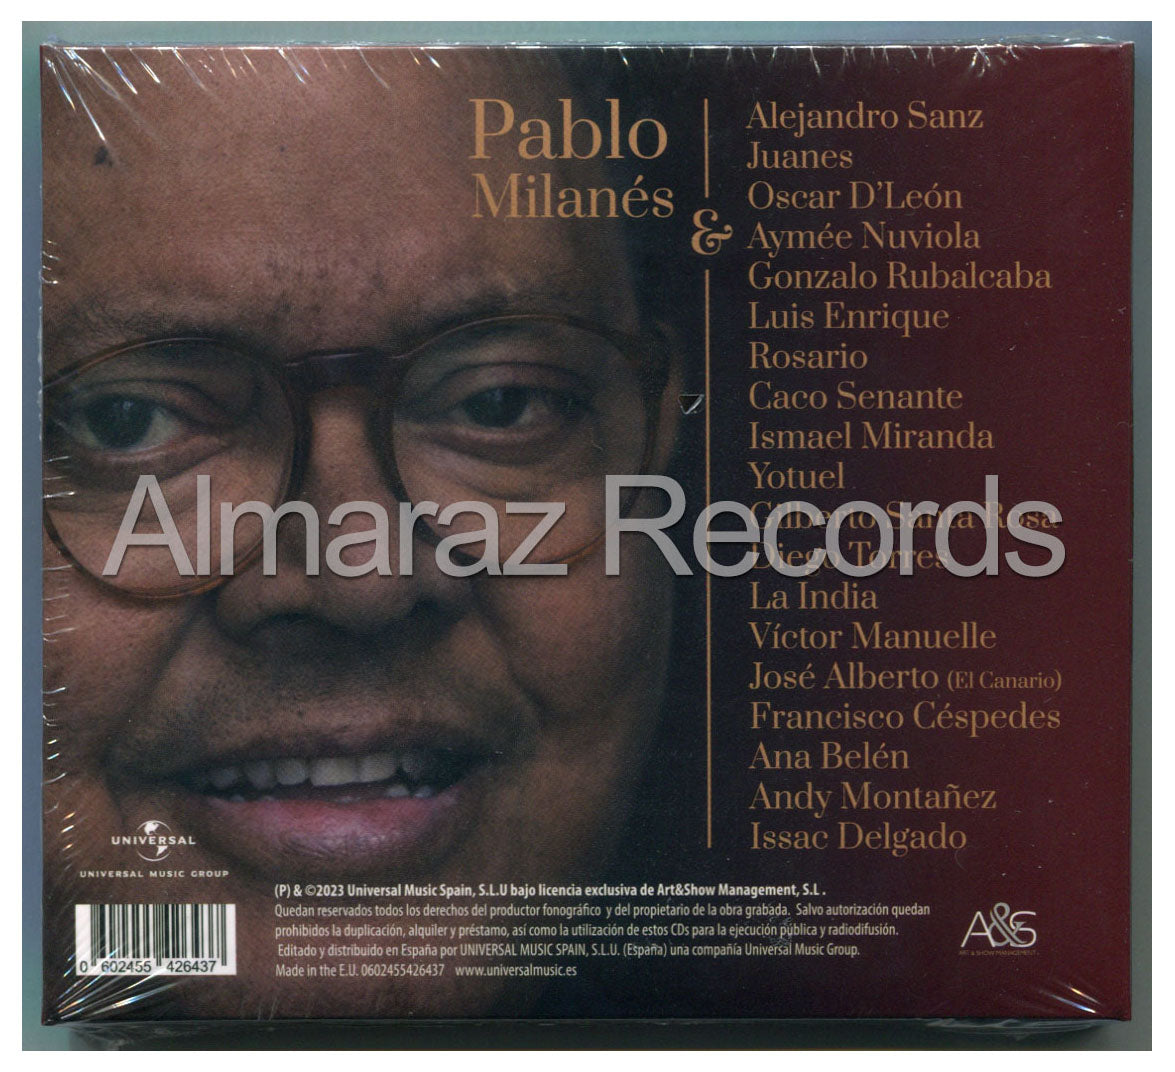 Pablo Milanes Amor Y Salsa 80 Aniversario 2CD [Importado]